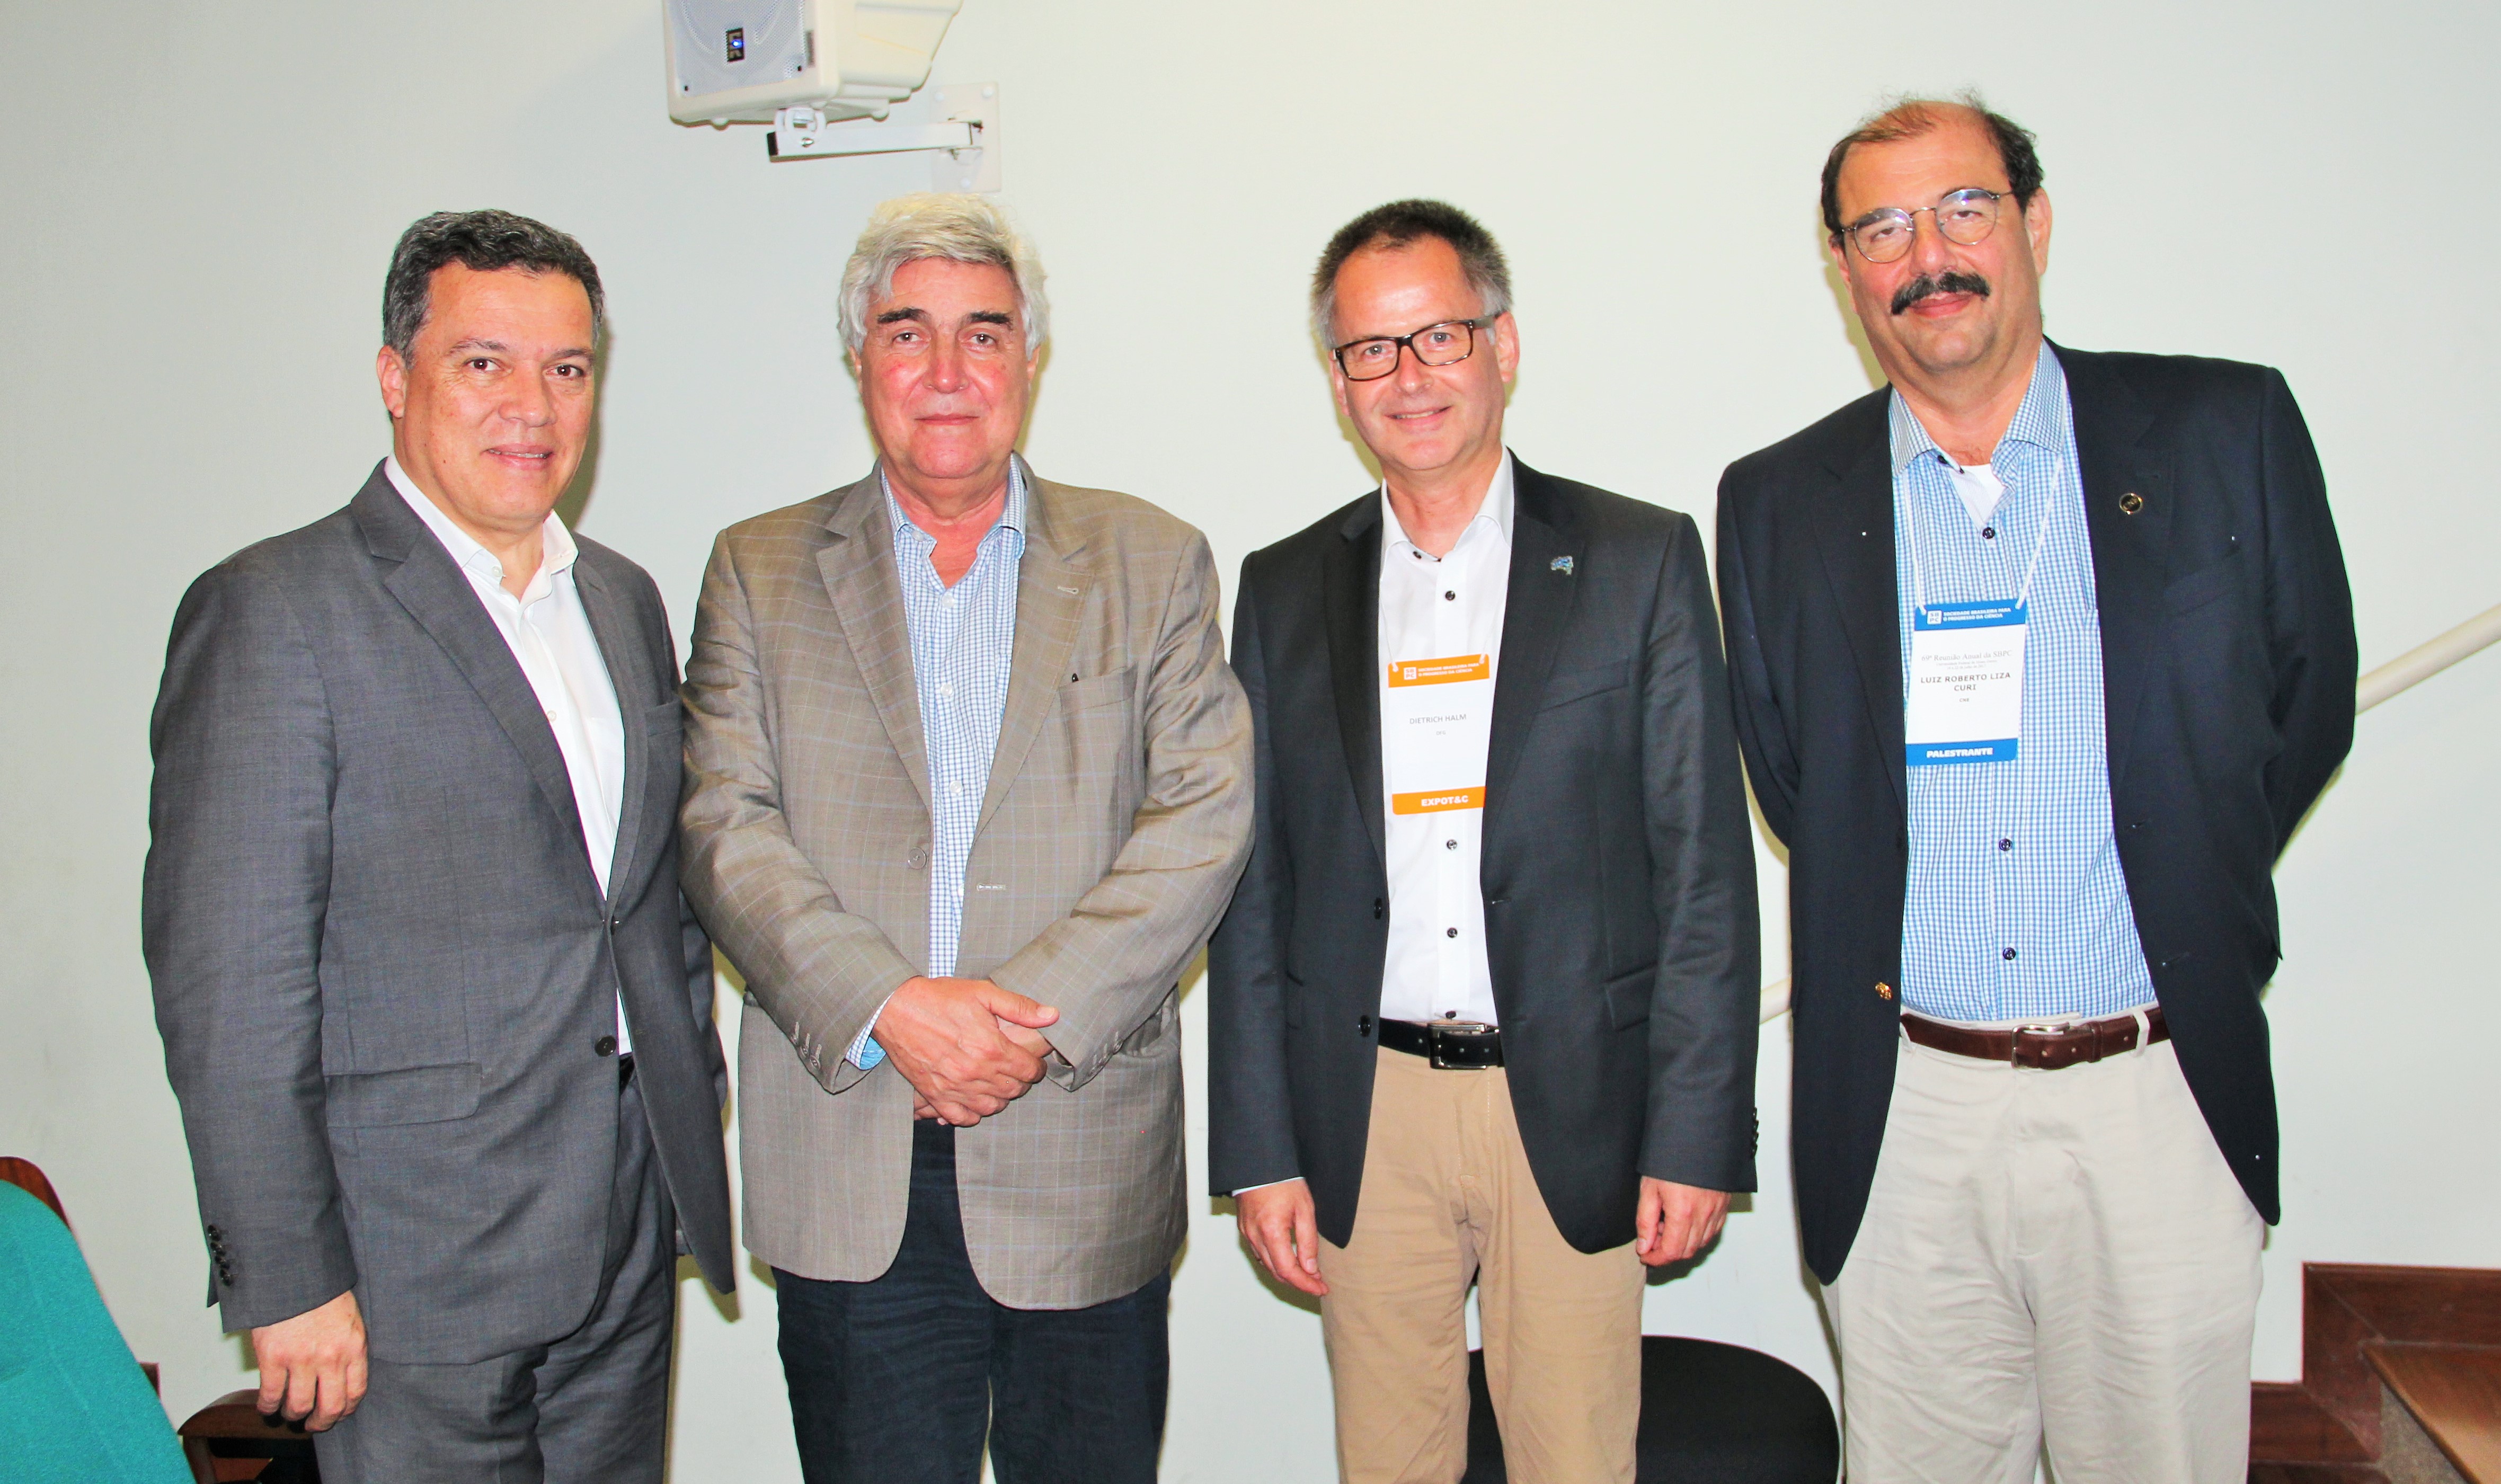 Jaime Ramírez, rector de la UFMG; Abílio Neves, presidente de la Capes; Dietrich Halm, director de cooperación internacional de la DFG con América Latina; y Luiz Roberto Curi, del MCTIC